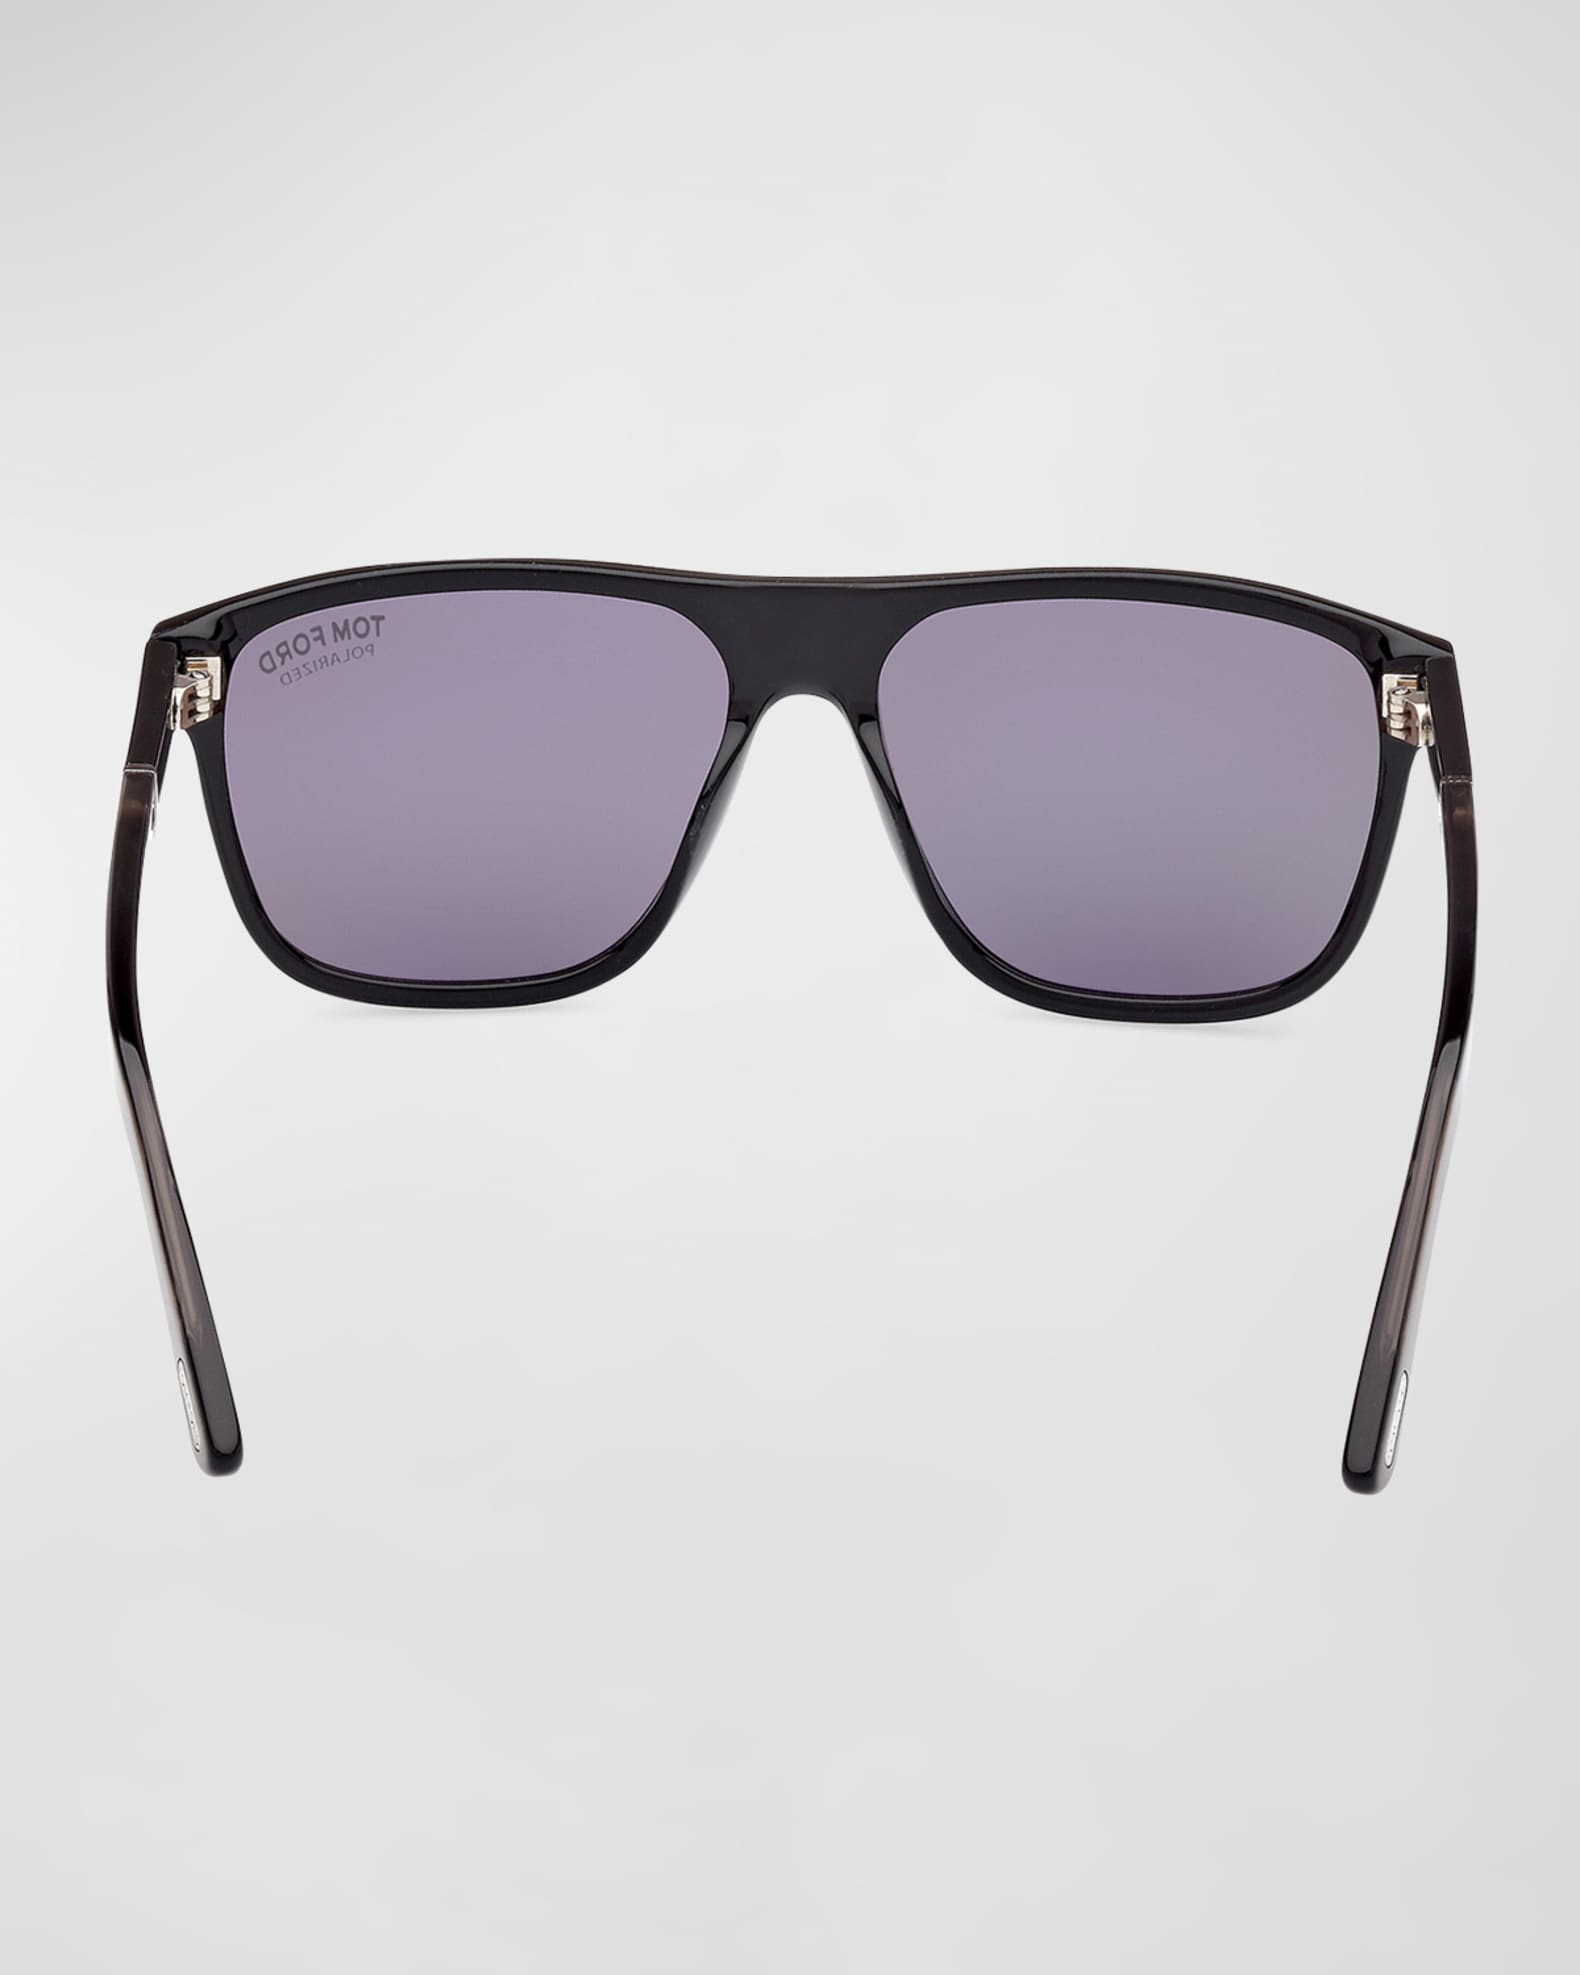 Tom Ford Men's Sunglasses Gerard-02 Black Acetate Brown Lens